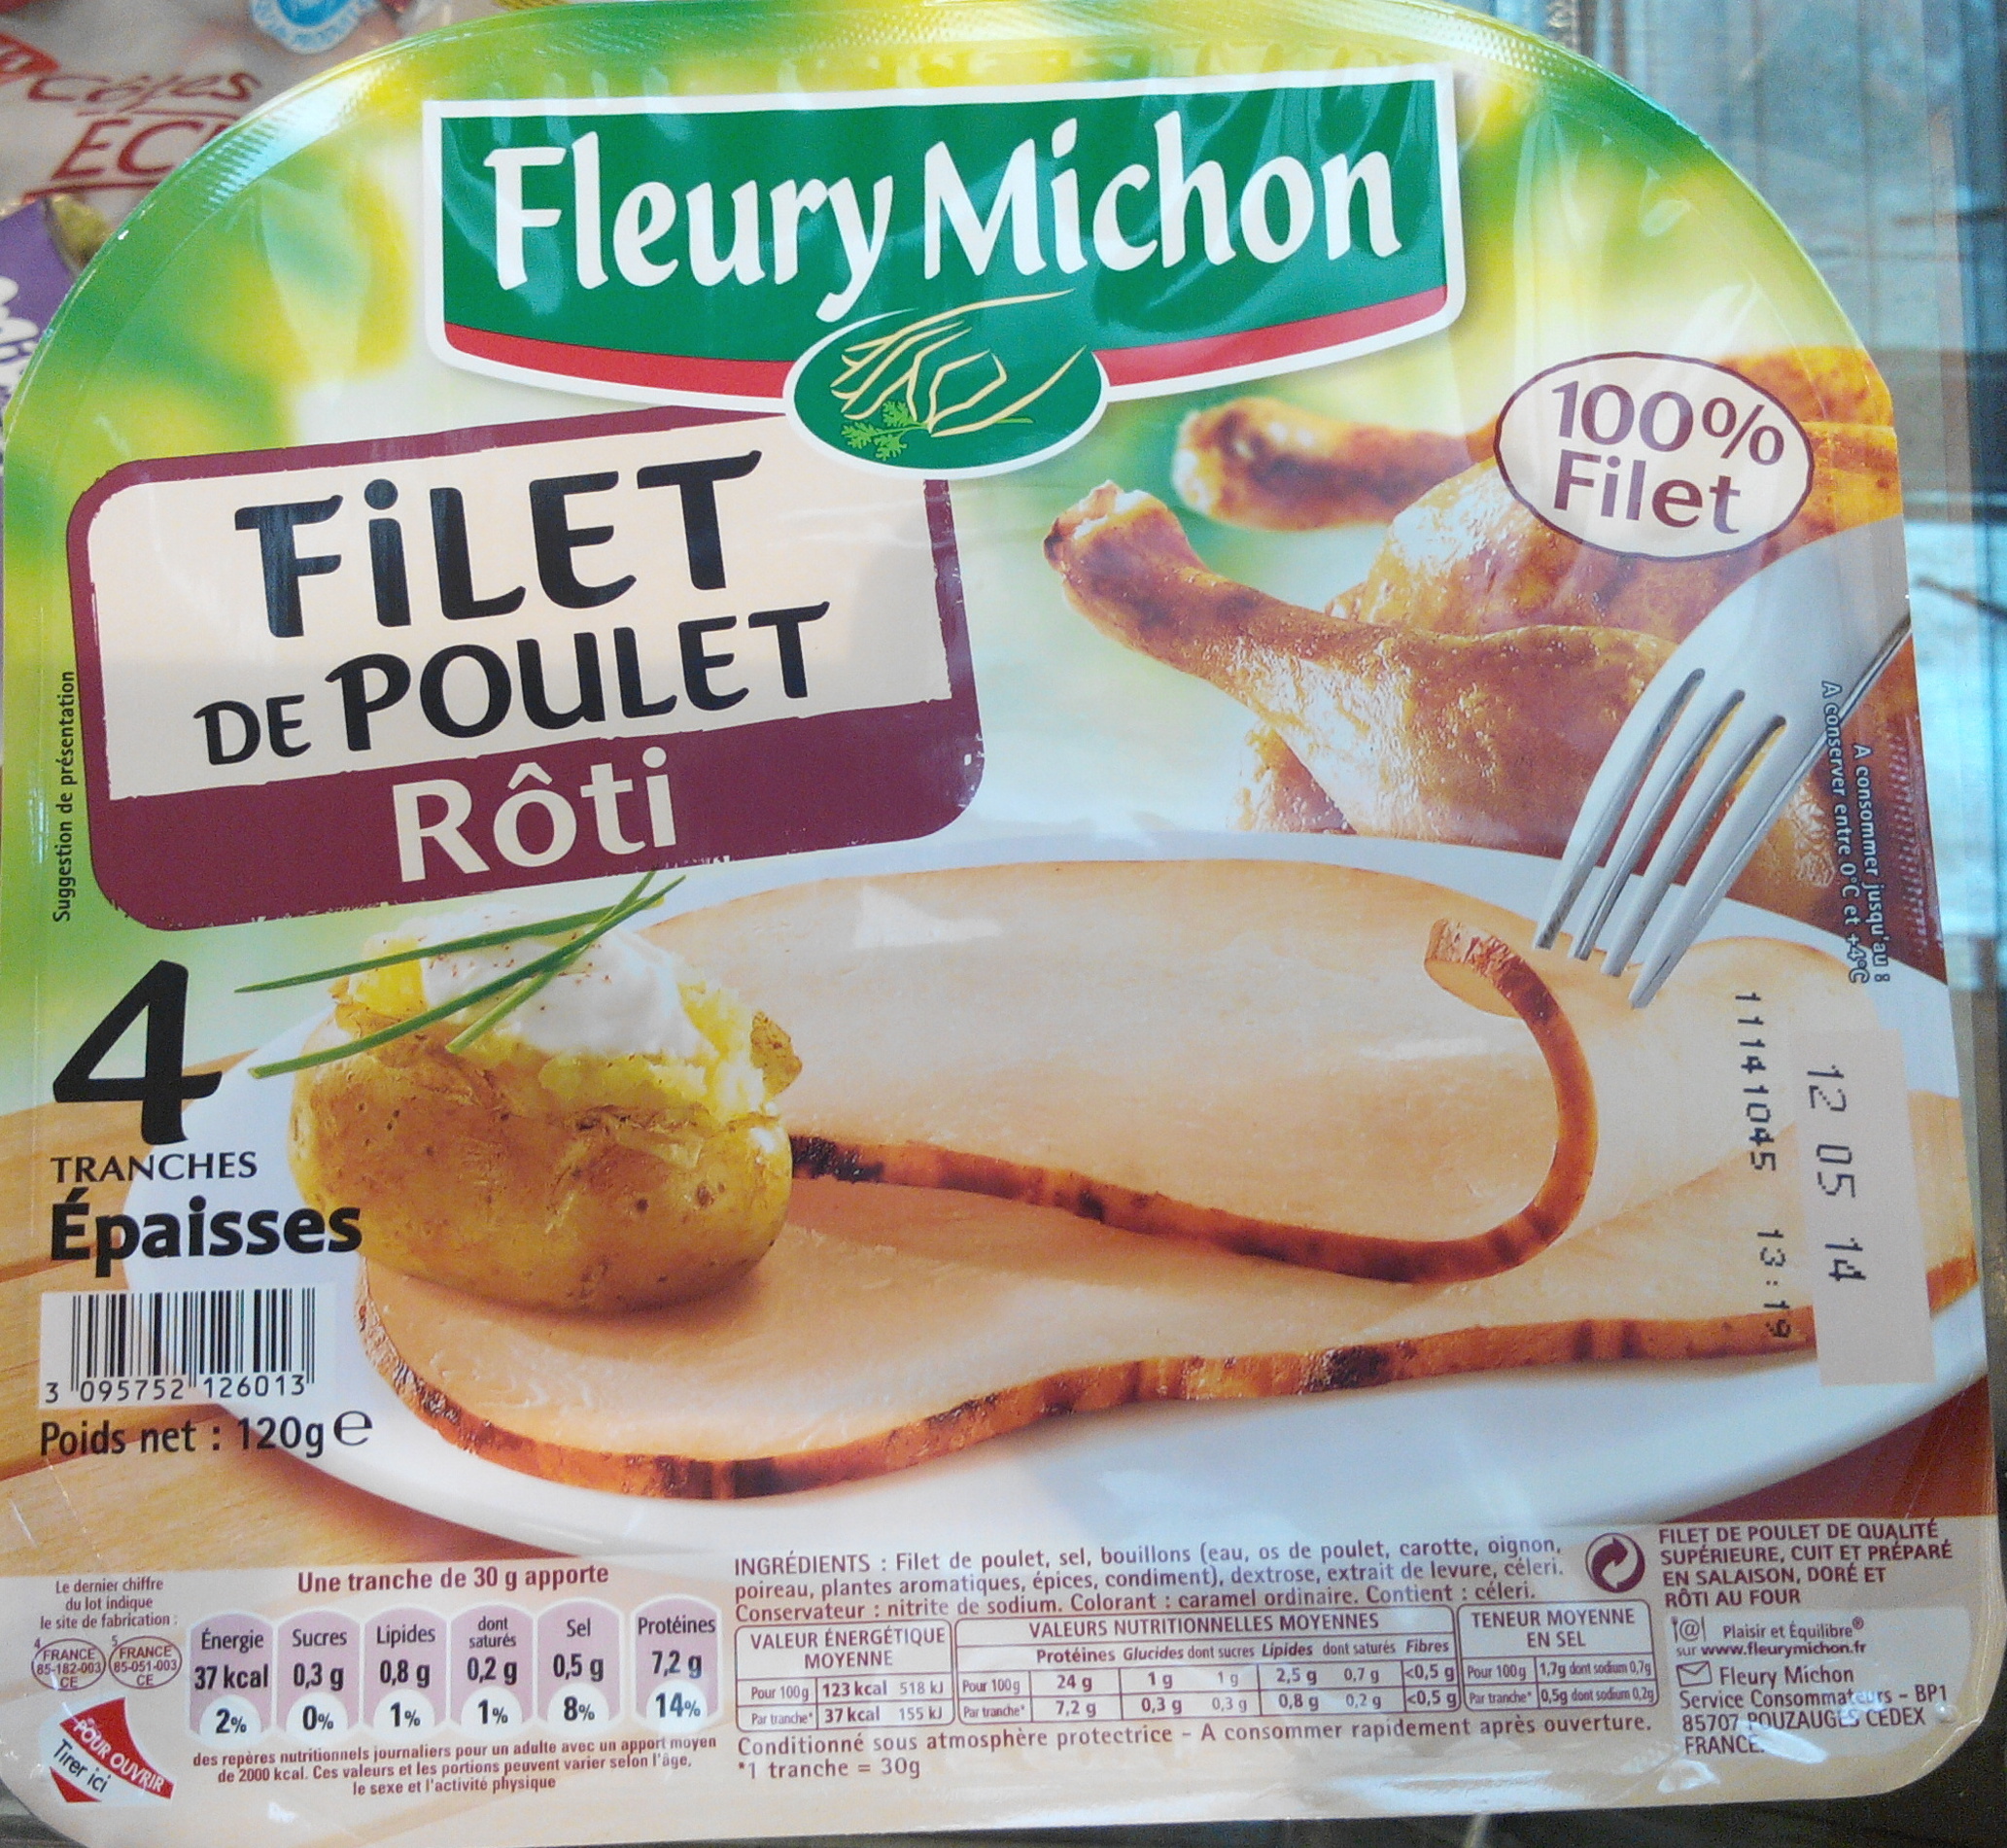 Filet de Poulet Rôti (4 Tranches Épaisses) - Produit